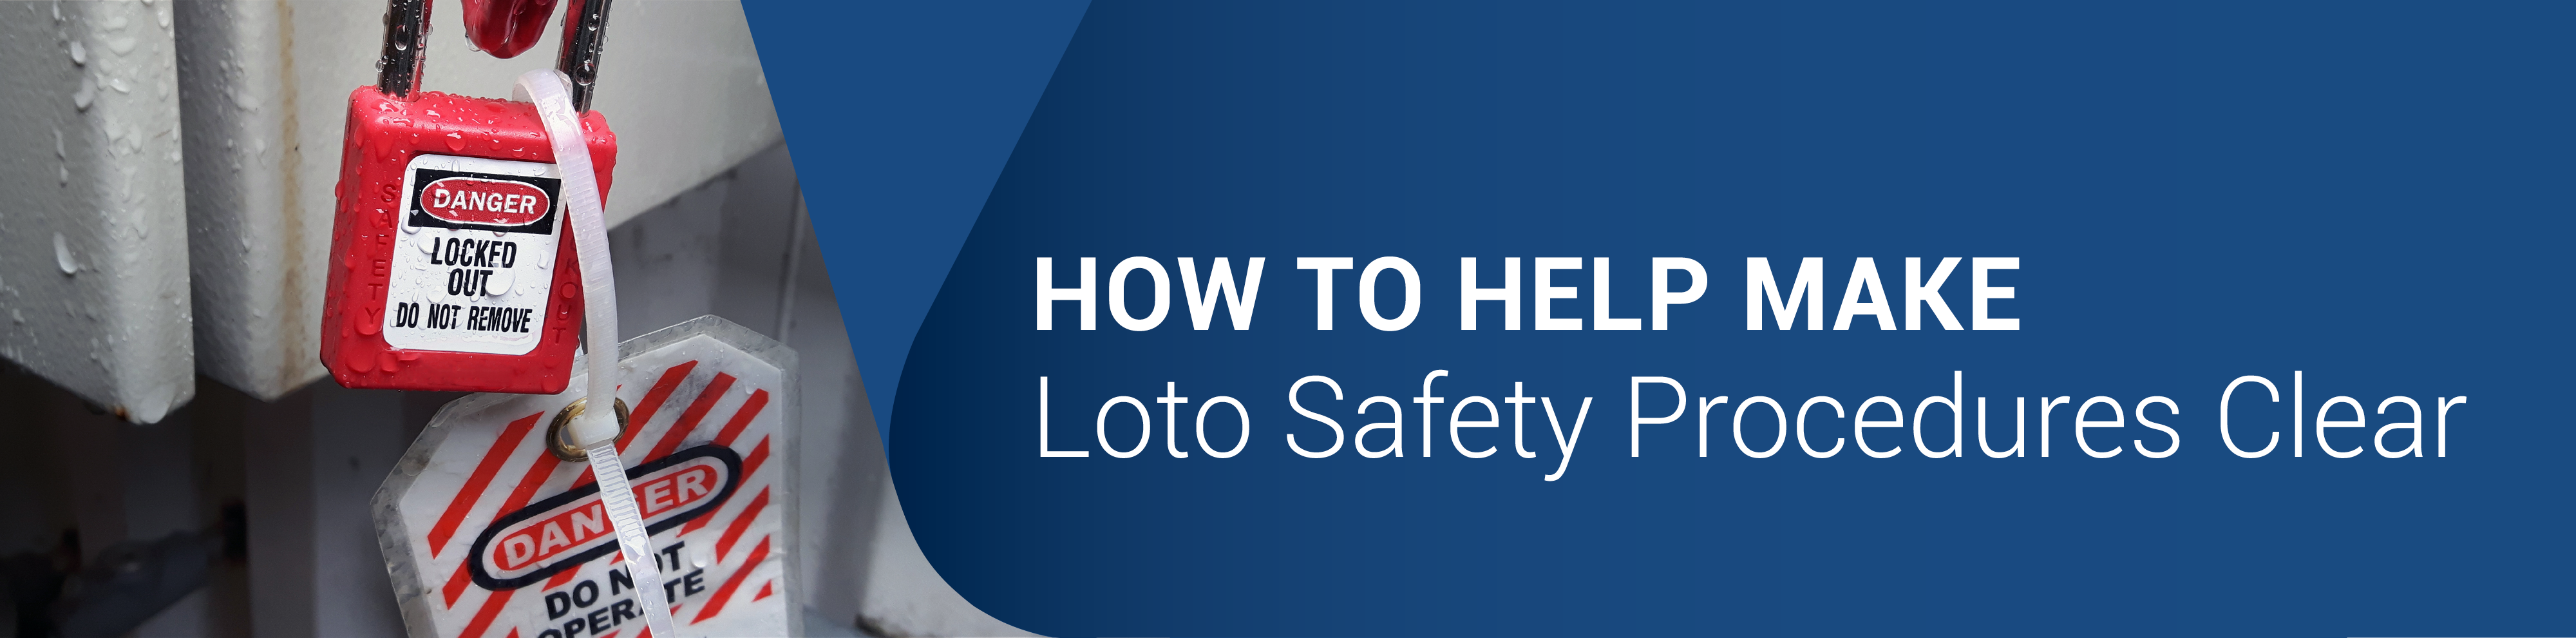 SMC_ Loto Safety Procedures